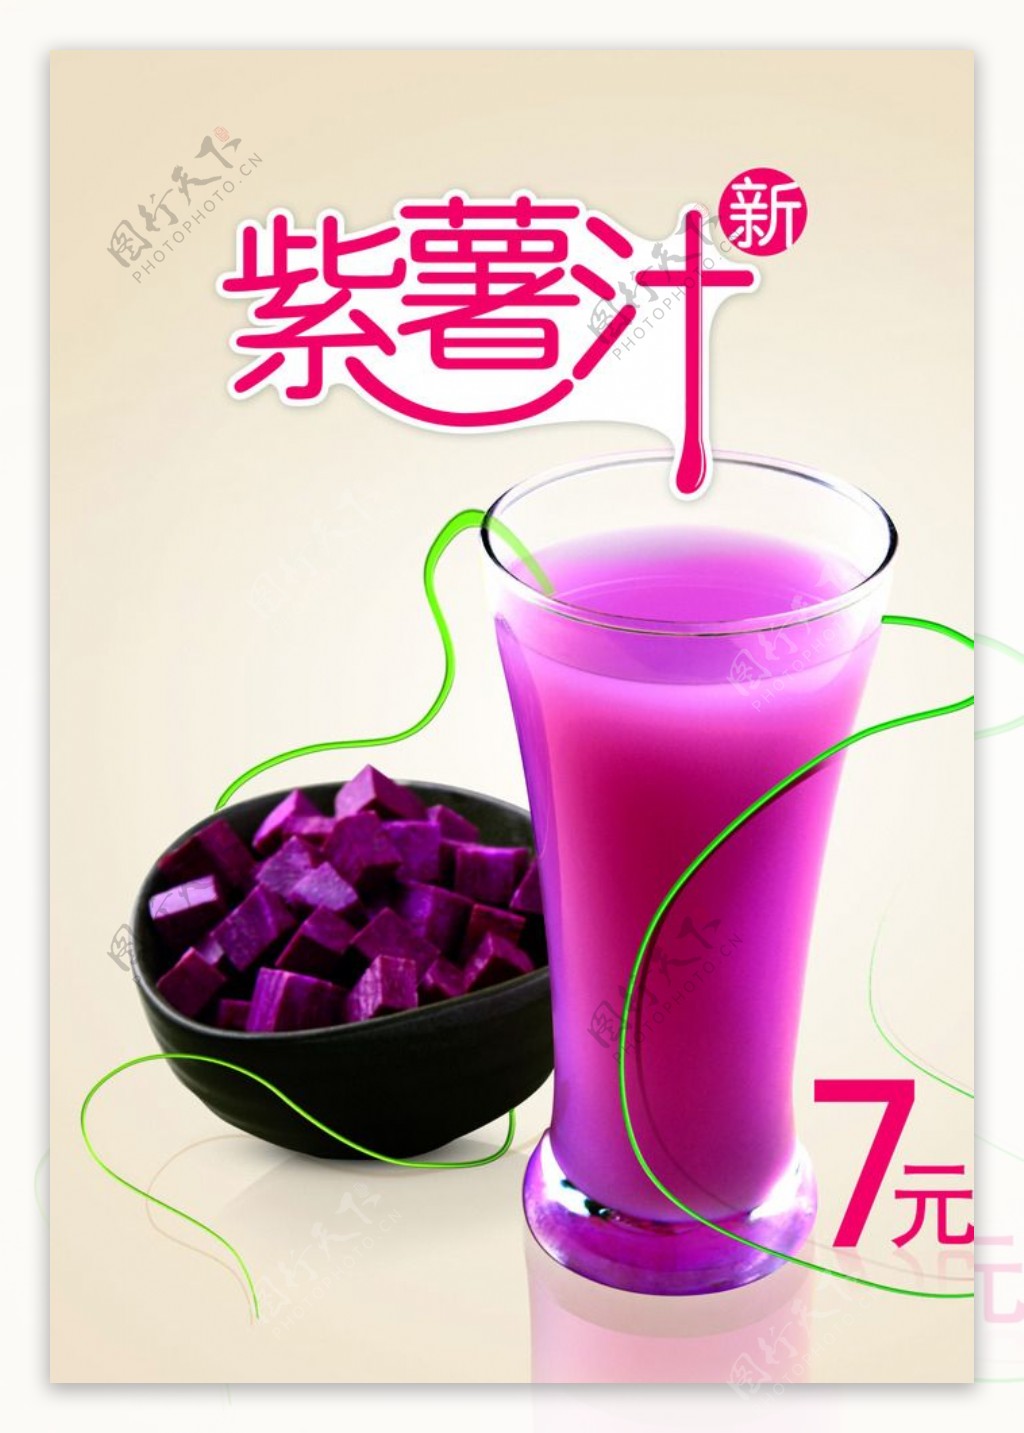 果汁海报图片